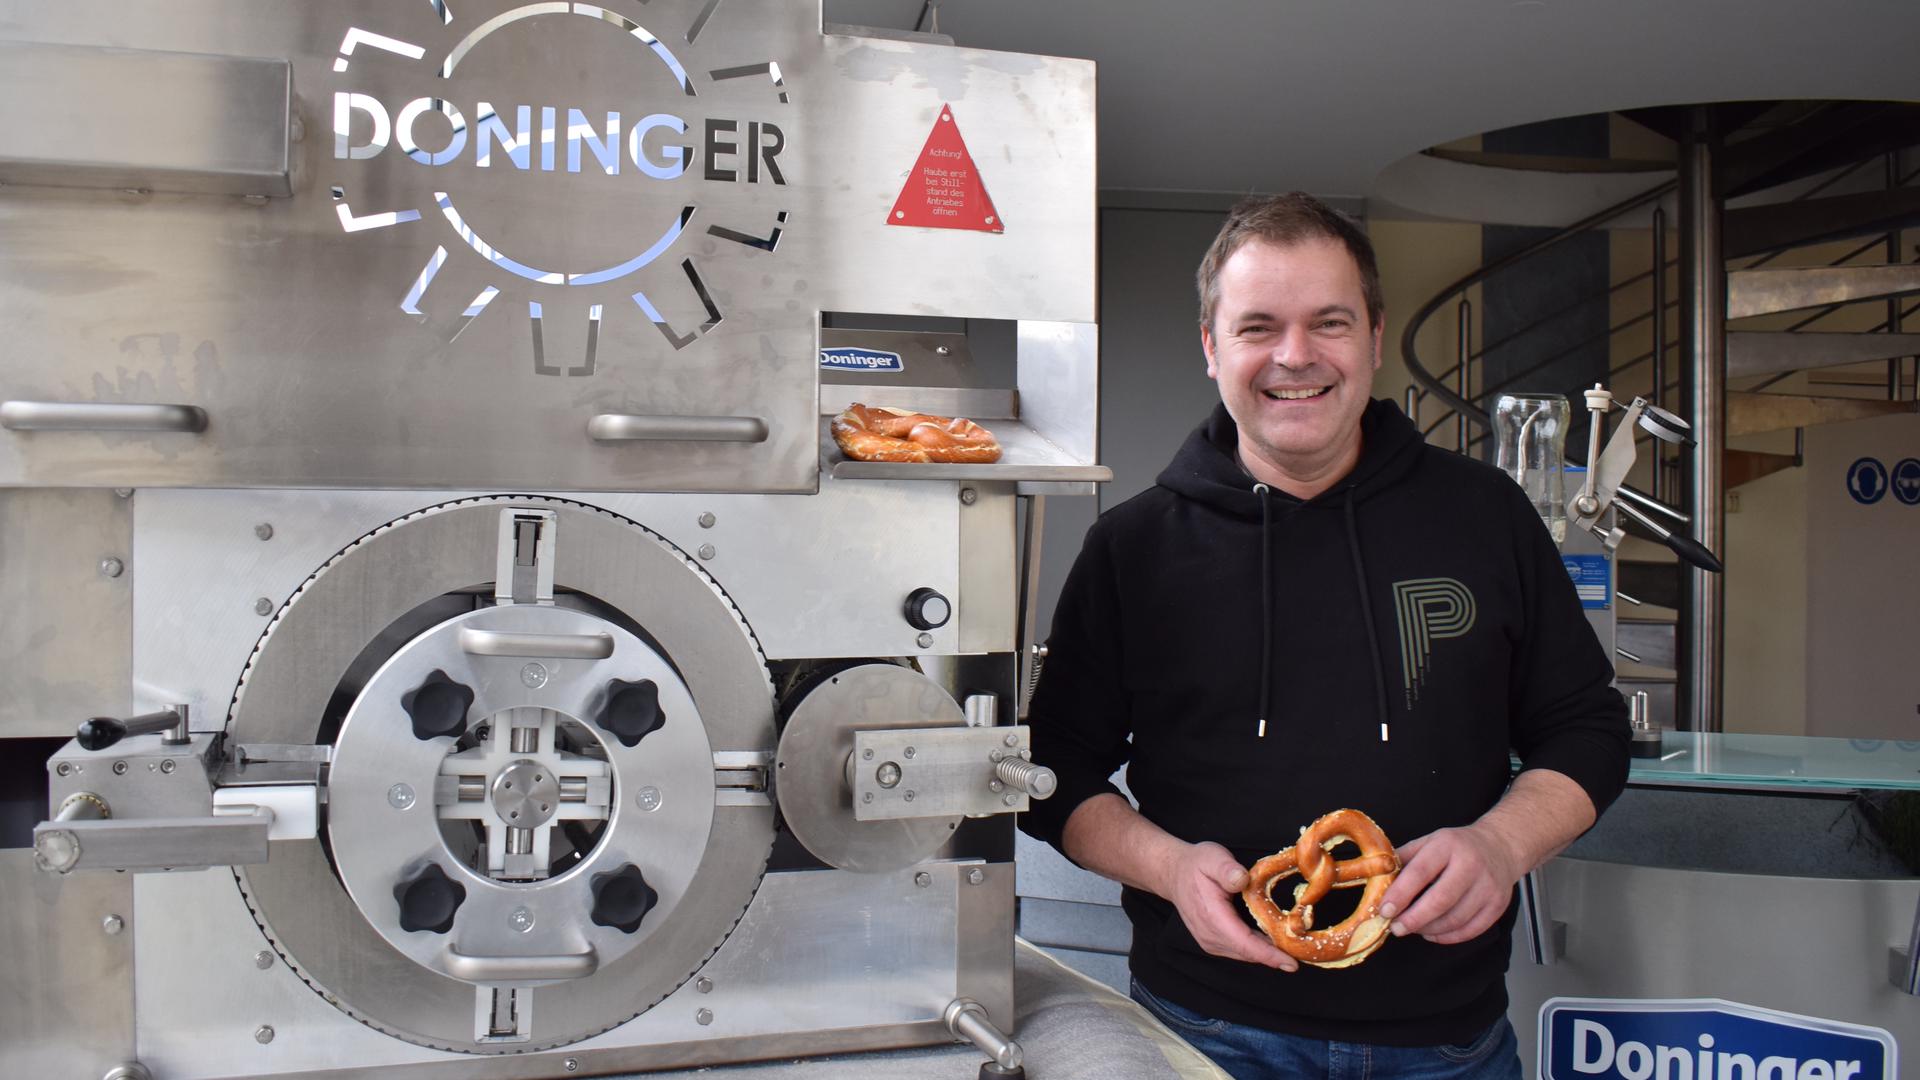 Joachim Doninger aus Obersasbach ist Maschinenbauer und Tüftler. „Spitze auf dem Land“ nennt das Land seine Erfindungen wie diese Butterbrezel-Schmiermaschine. Er will sie an einem größeren Standort in Achern zur Serienreife bringen.